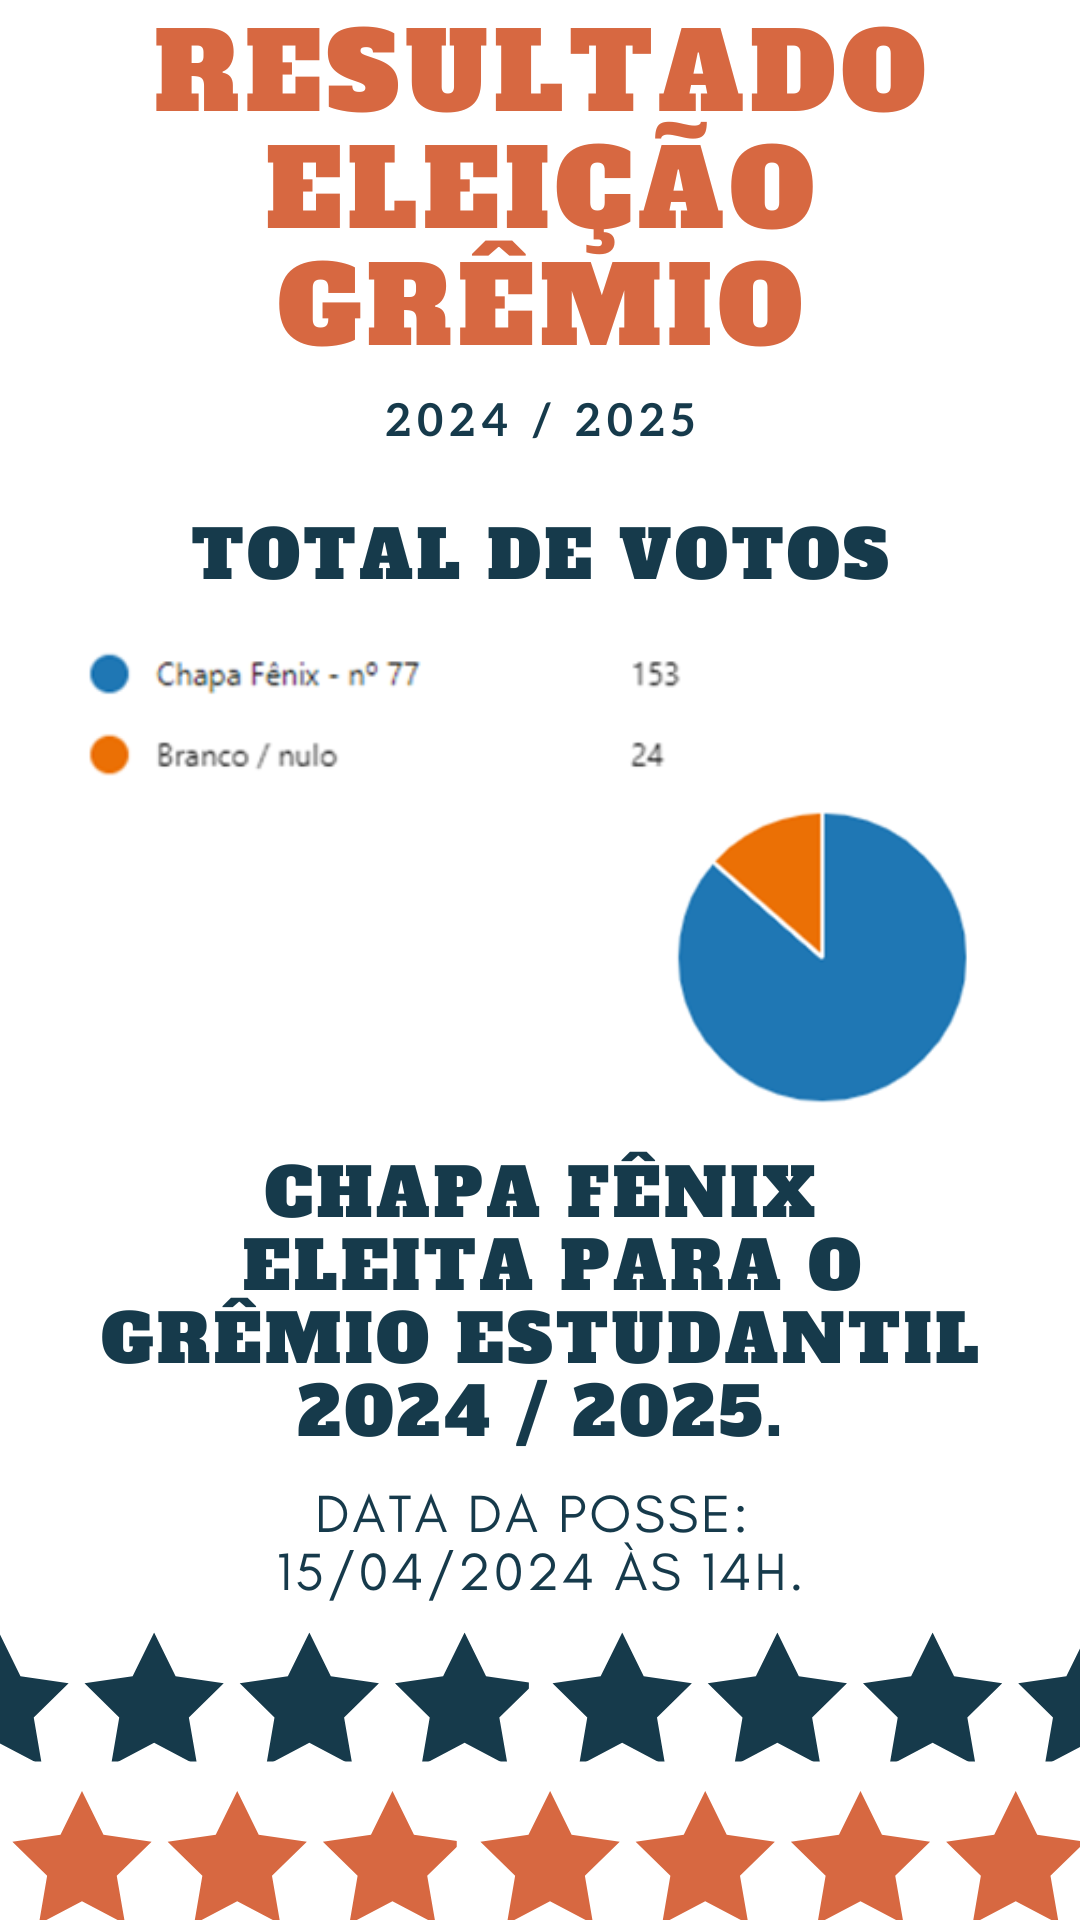 Resultado do Grêmio Estudantil 2024-2025